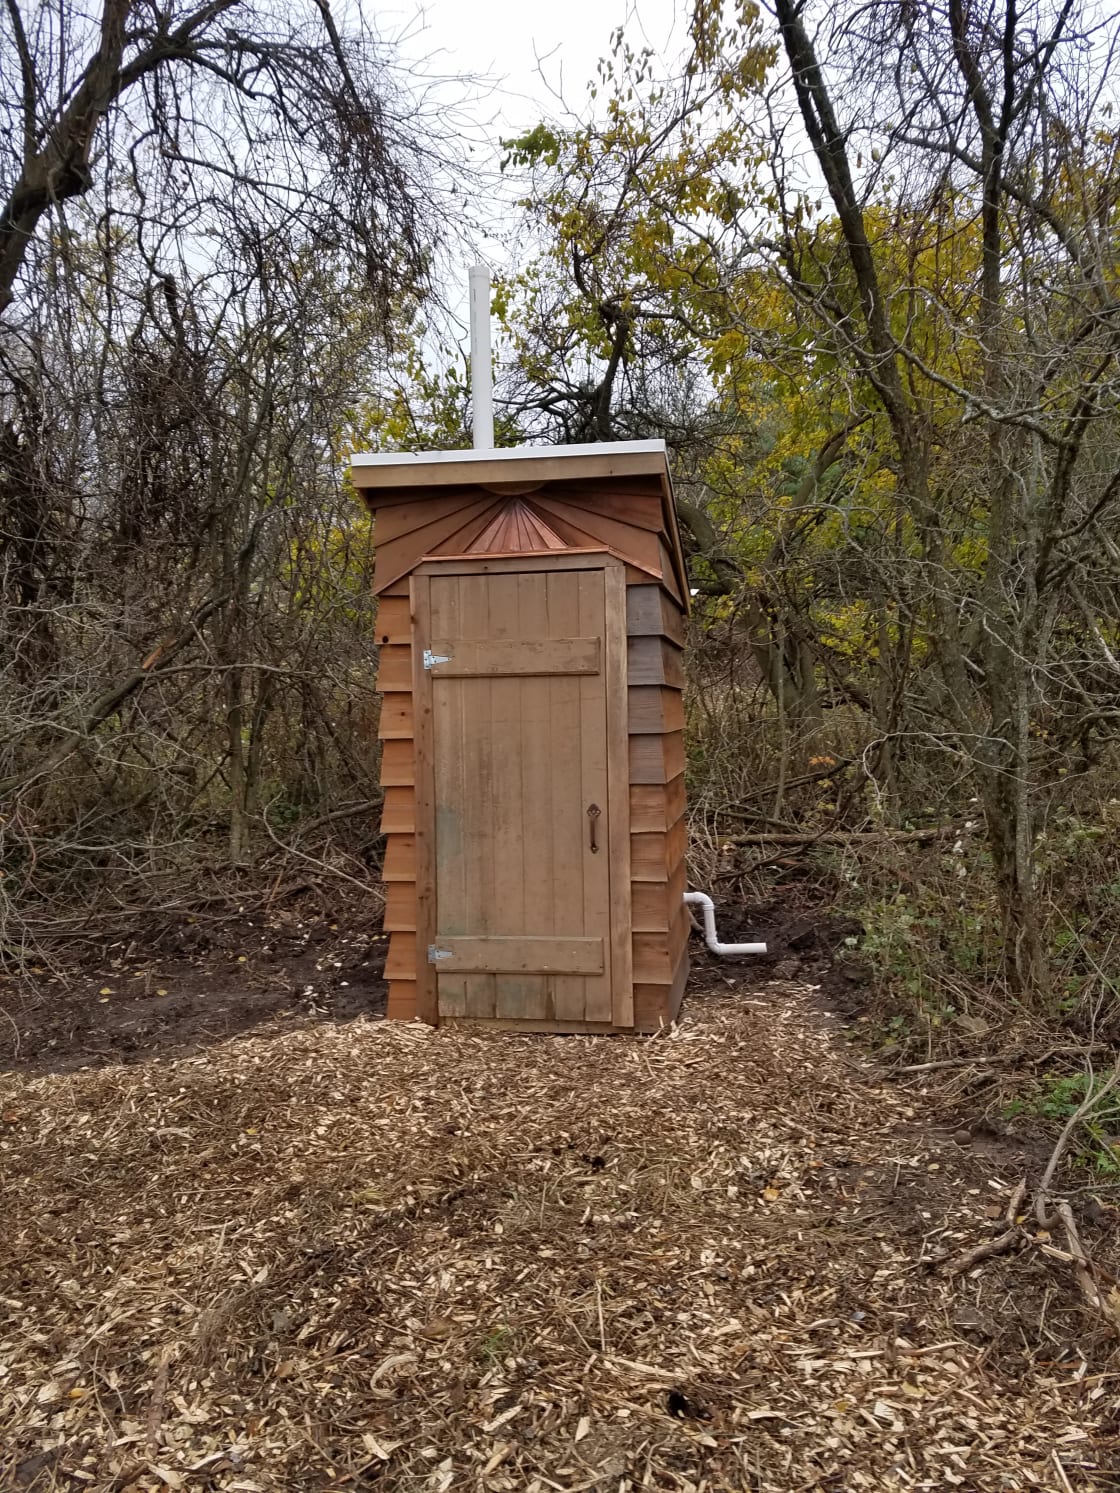 Inside privy (composting toilet)